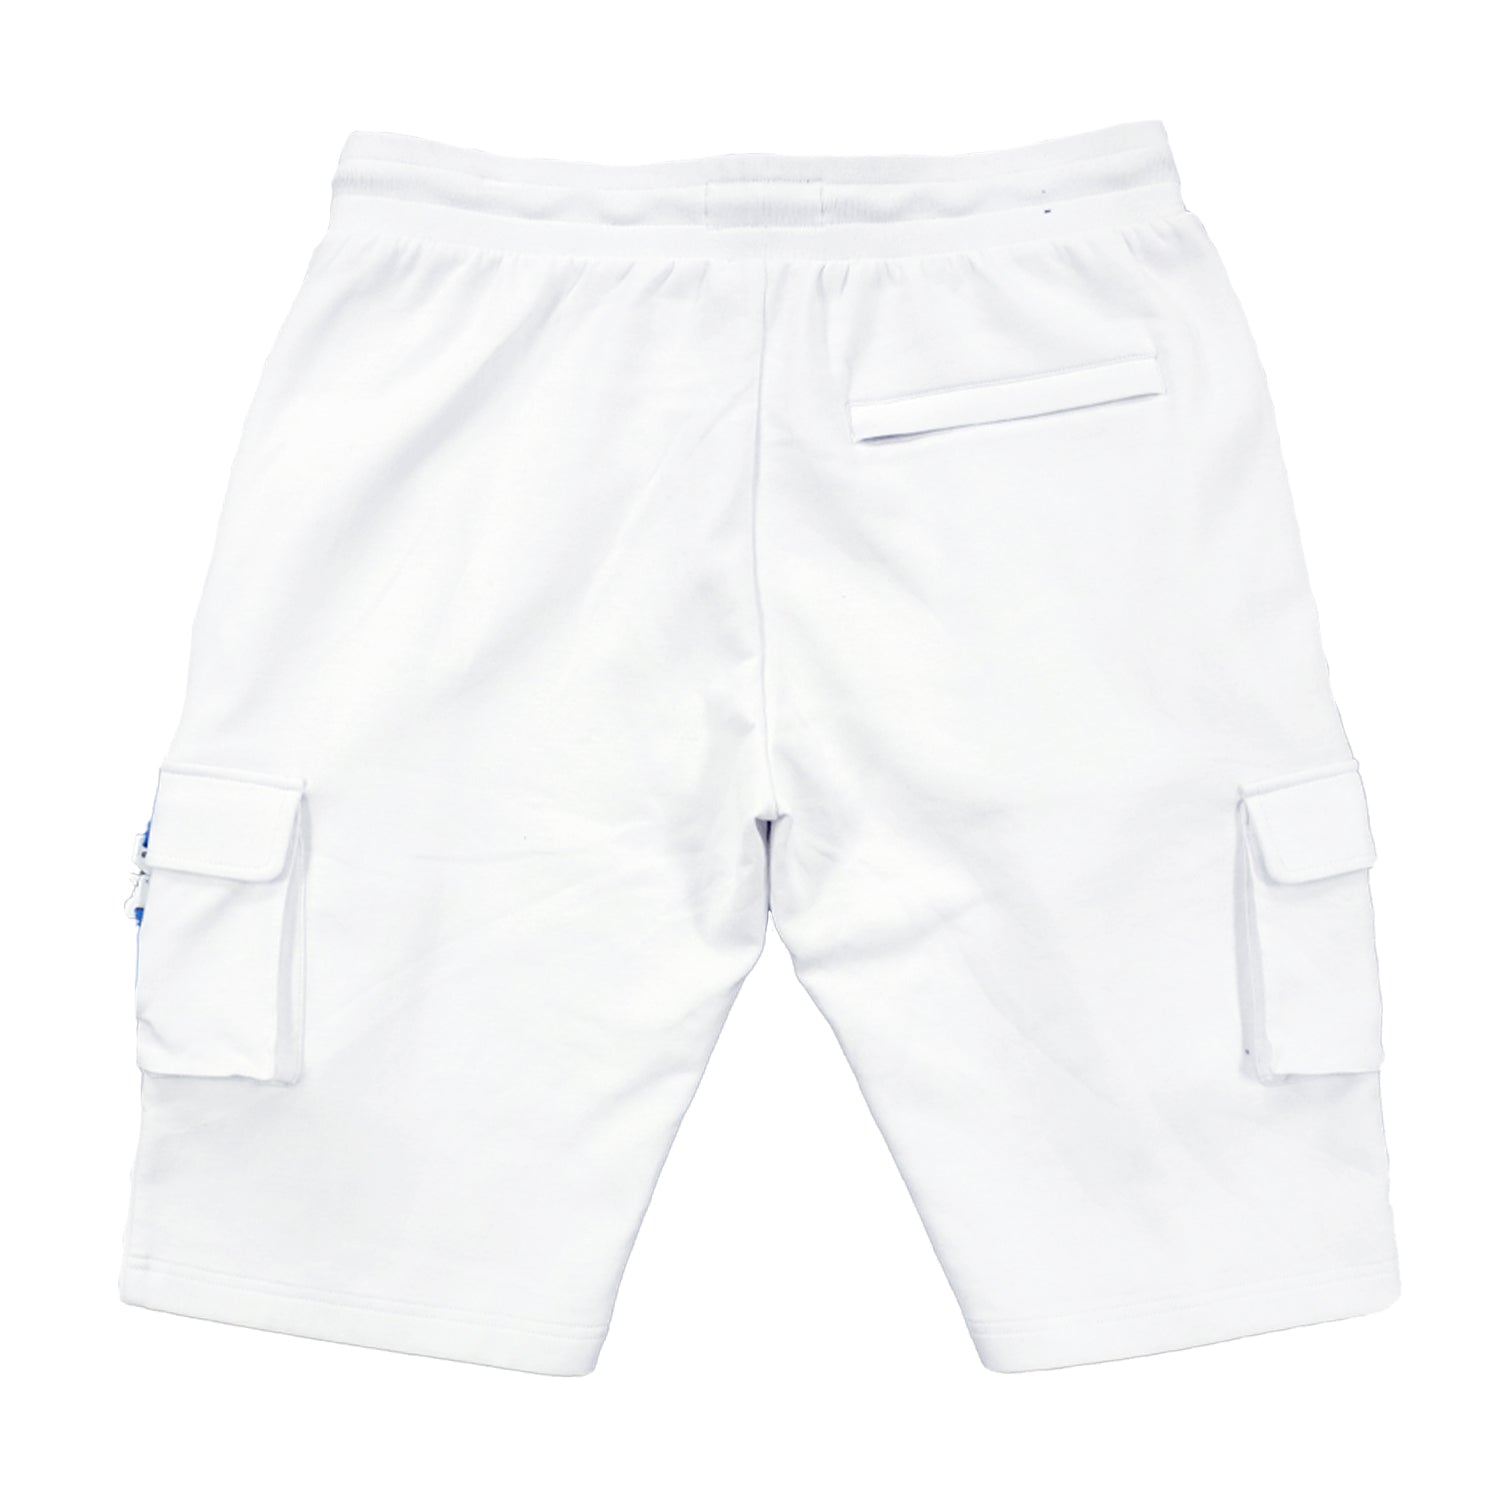 M670 Tech Fleece cargo Shorts - White